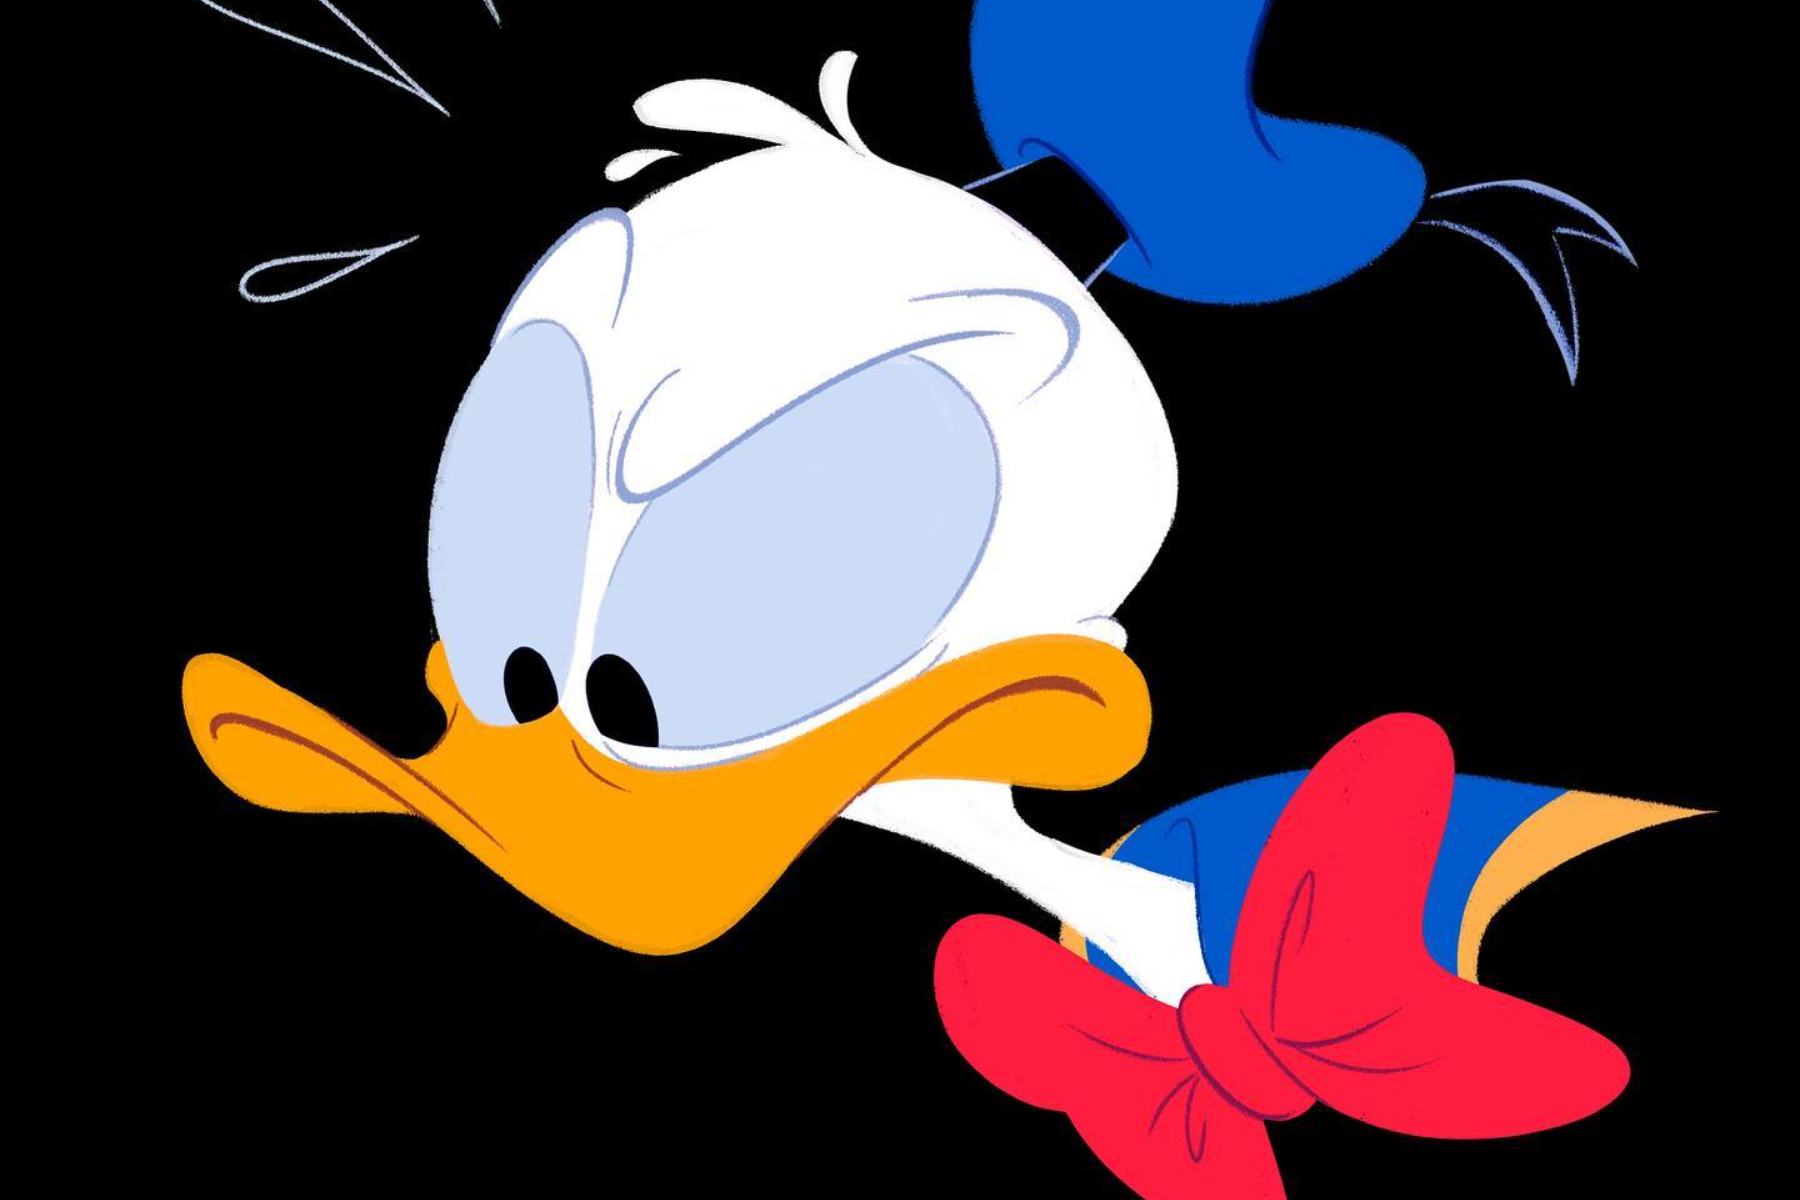 Donald Duck is in the dark